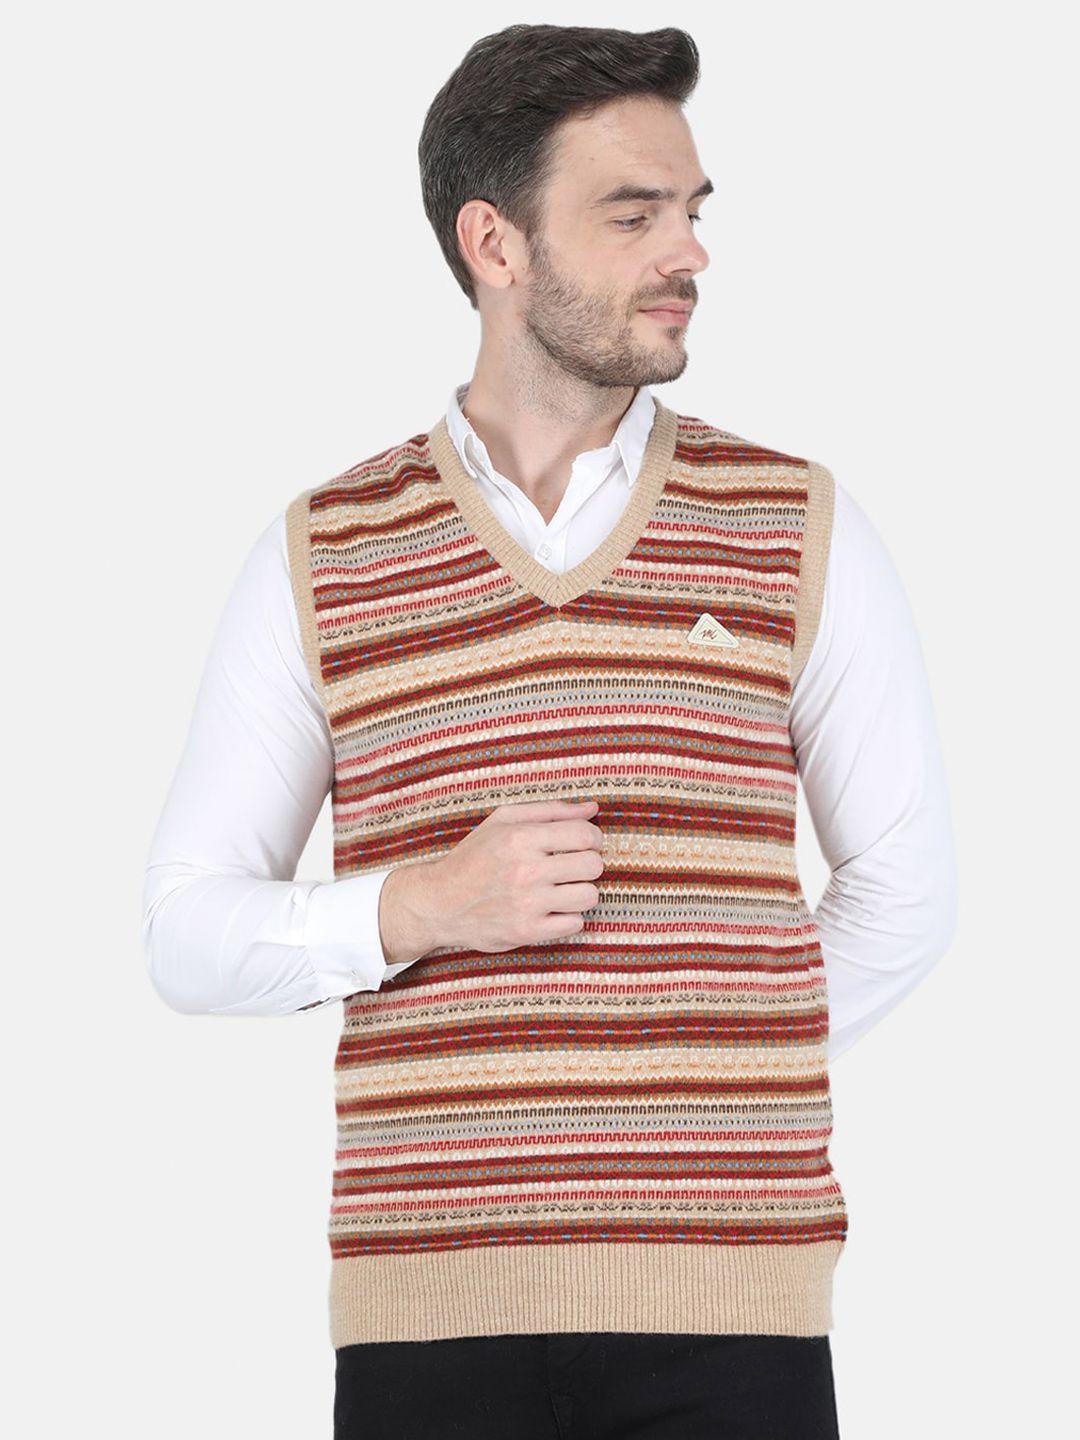 monte carlo men beige & red striped wool sweater vest